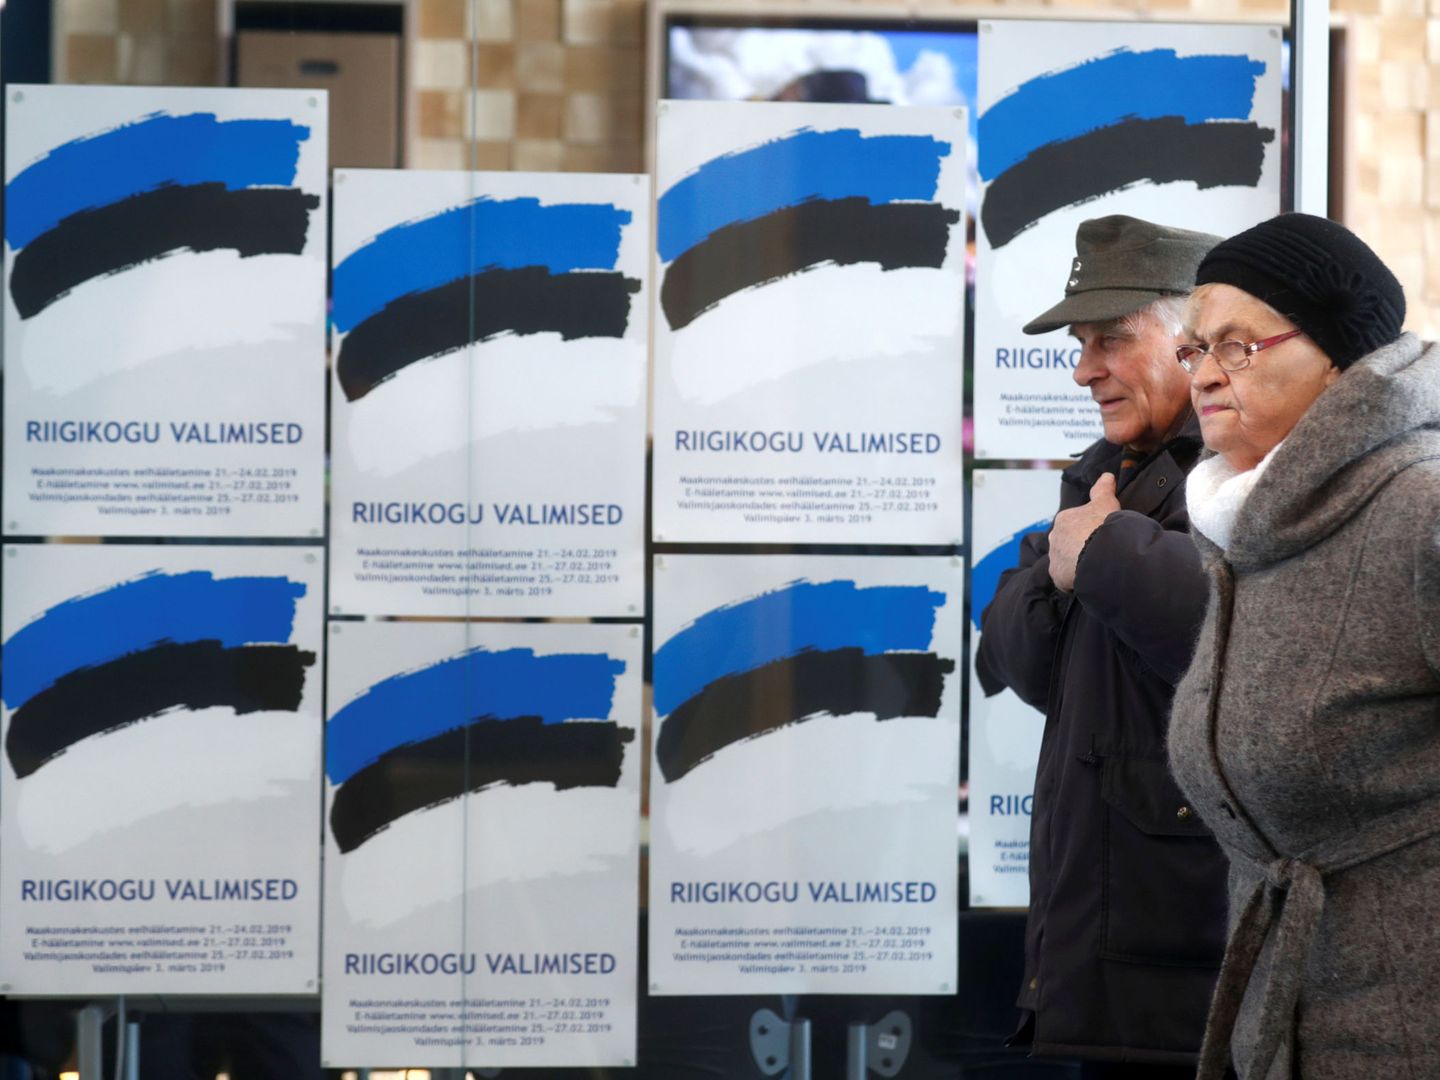 Dos personas pasan frente a unos carteles electorales en Parnu, Estonia, el 3 de marzo de 2019. (Reuters)